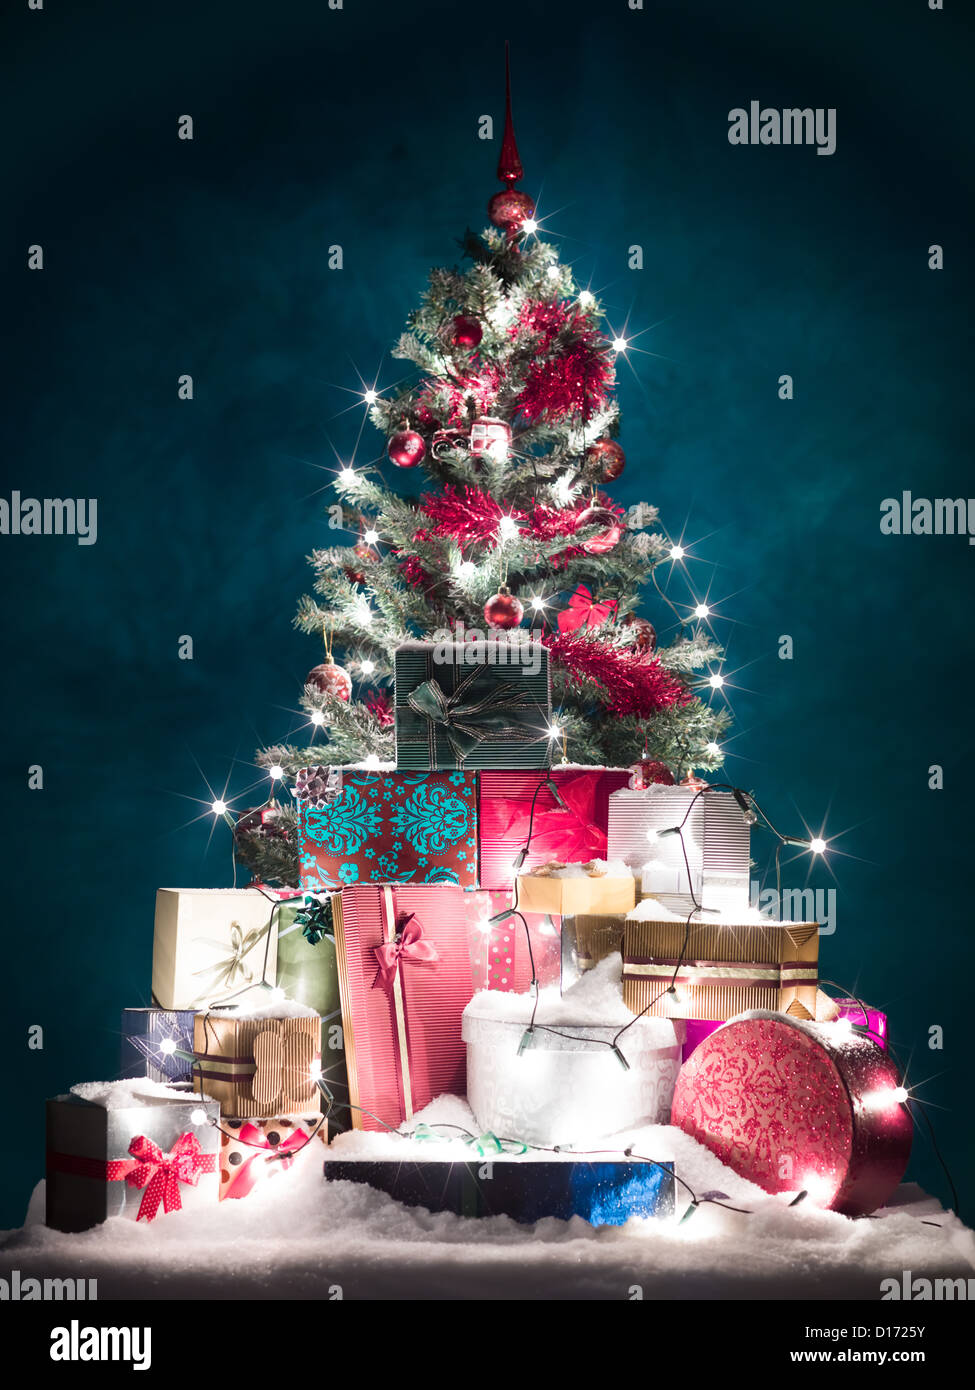 geschmückter Weihnachtsbaum mit roten Verzierungen und glänzend weiße  Lichter, umgeben von bunten Geschenke mit Schnee bedeckt, vor blauem  Hintergrund mit Farbverlauf Licht Stockfotografie - Alamy